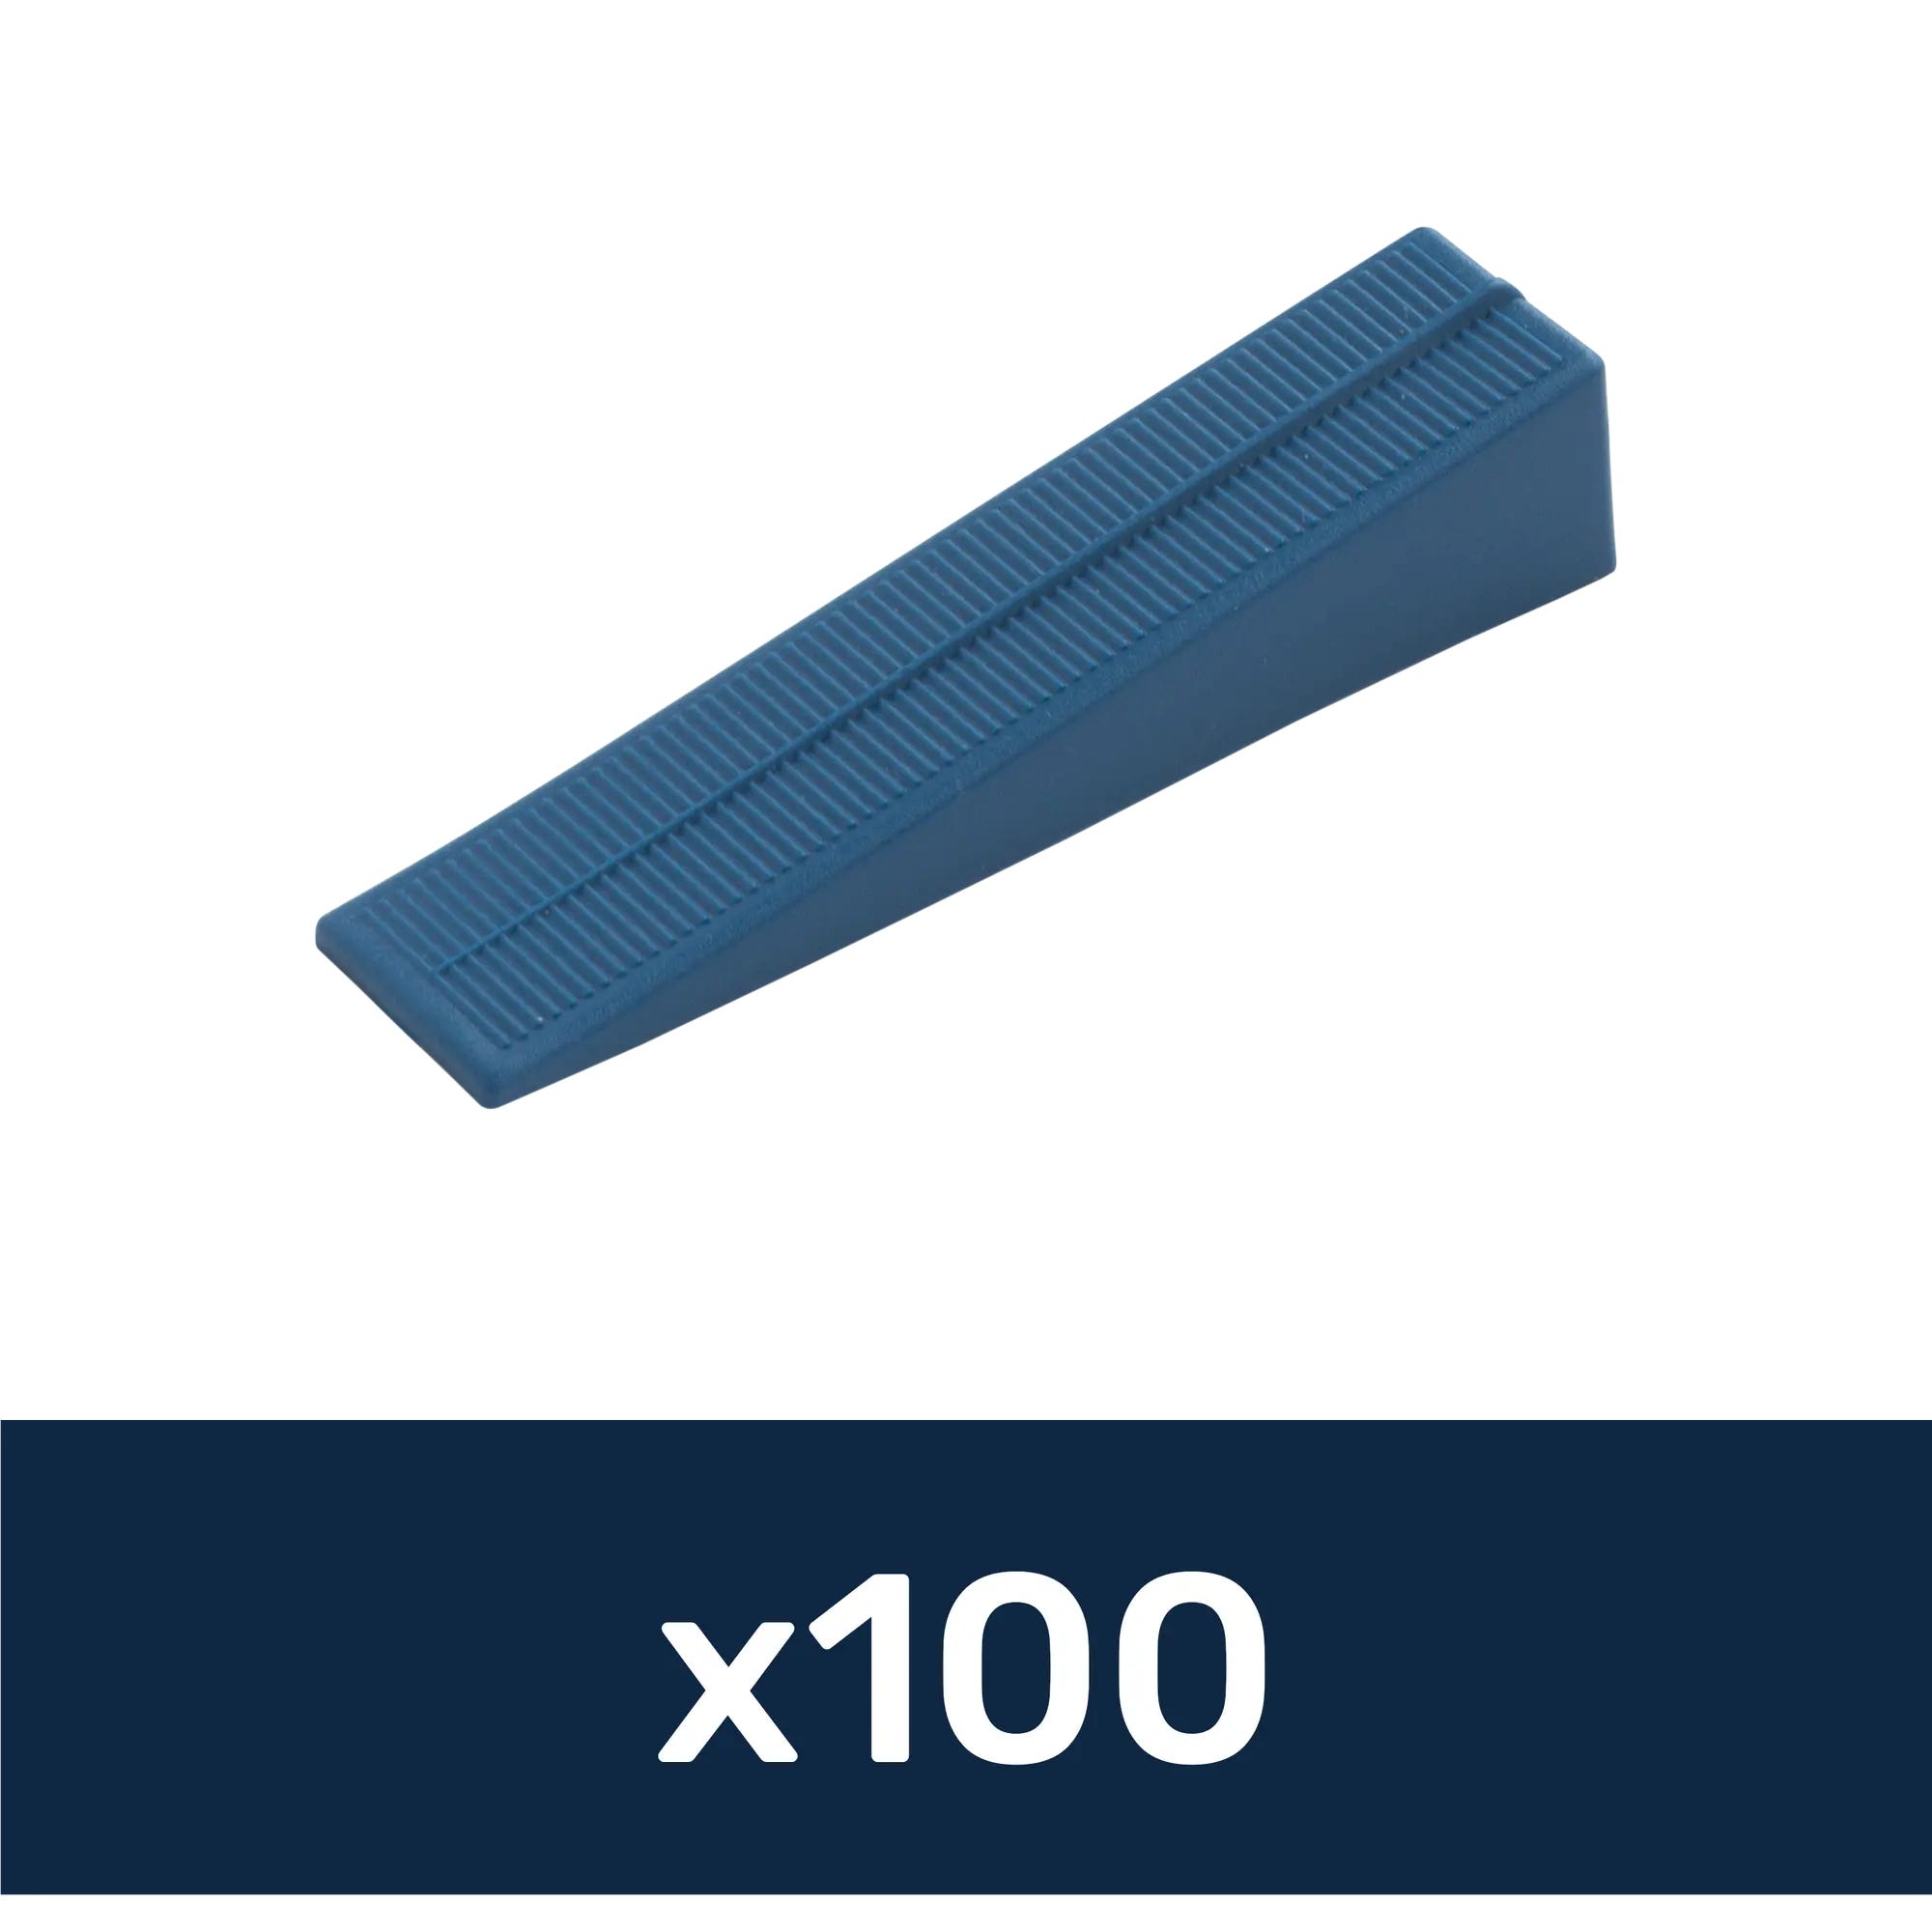 Cuña de plástico para nivelación de azulejos (200 ud.)